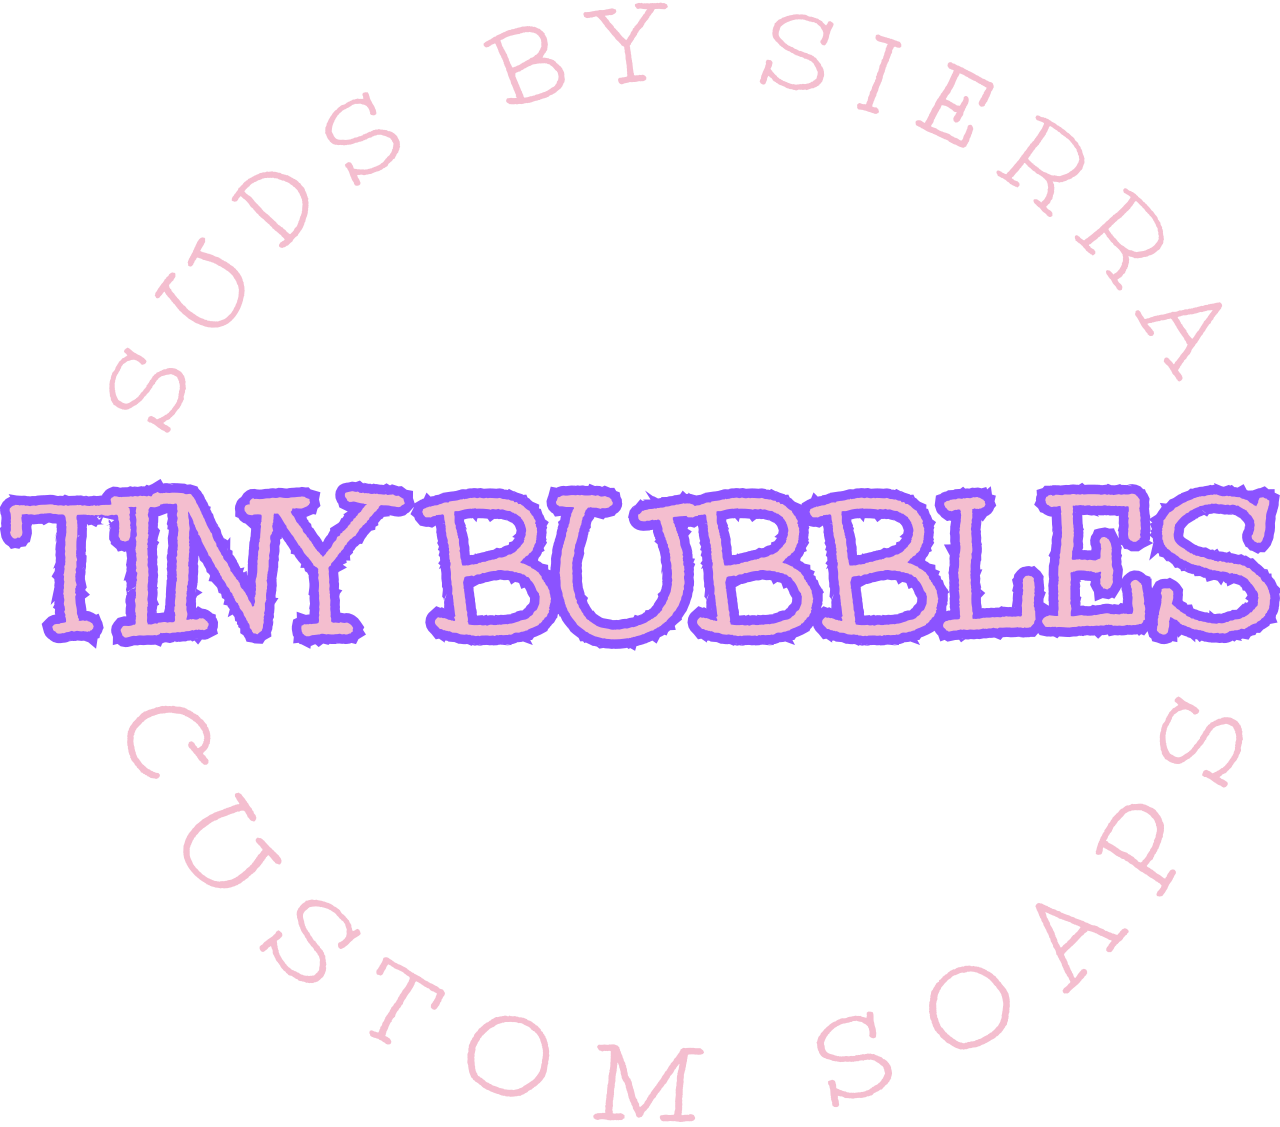 Tiny Bubbles's logo